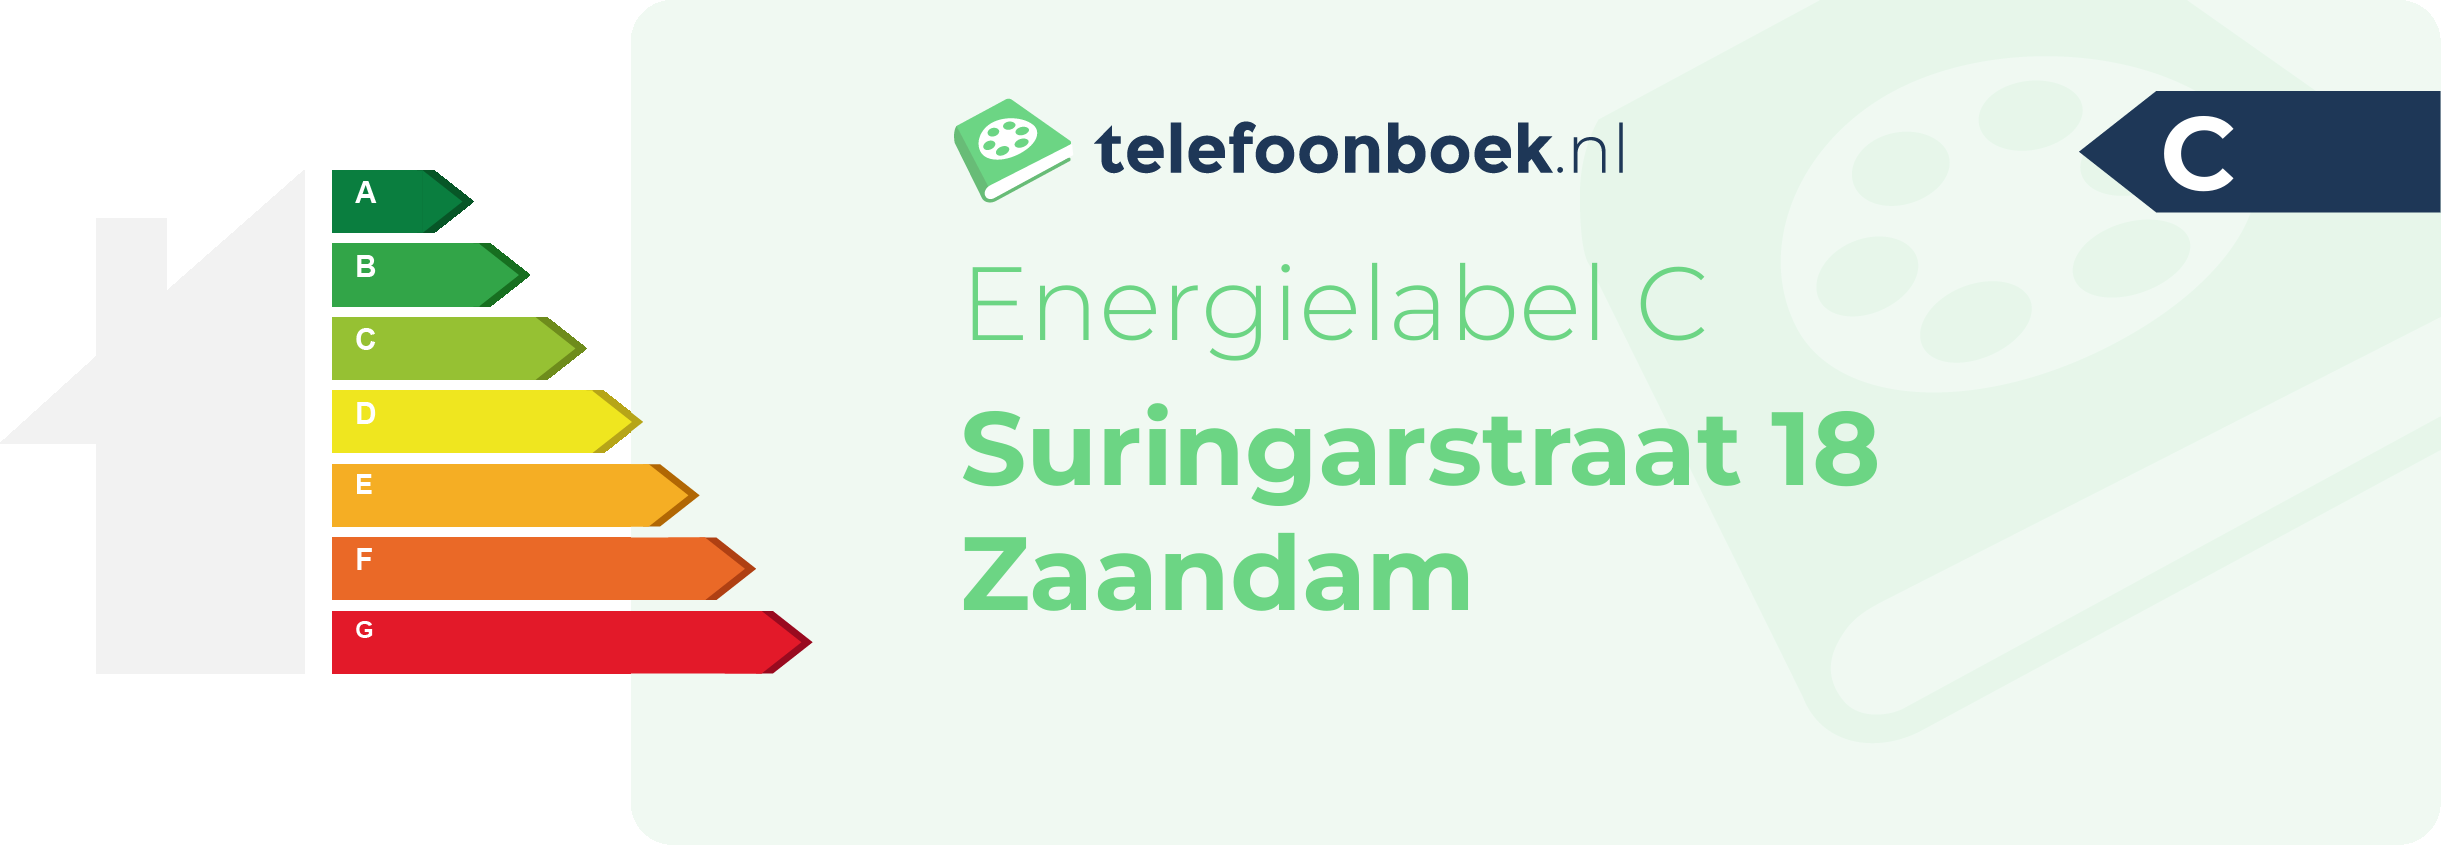 Energielabel Suringarstraat 18 Zaandam